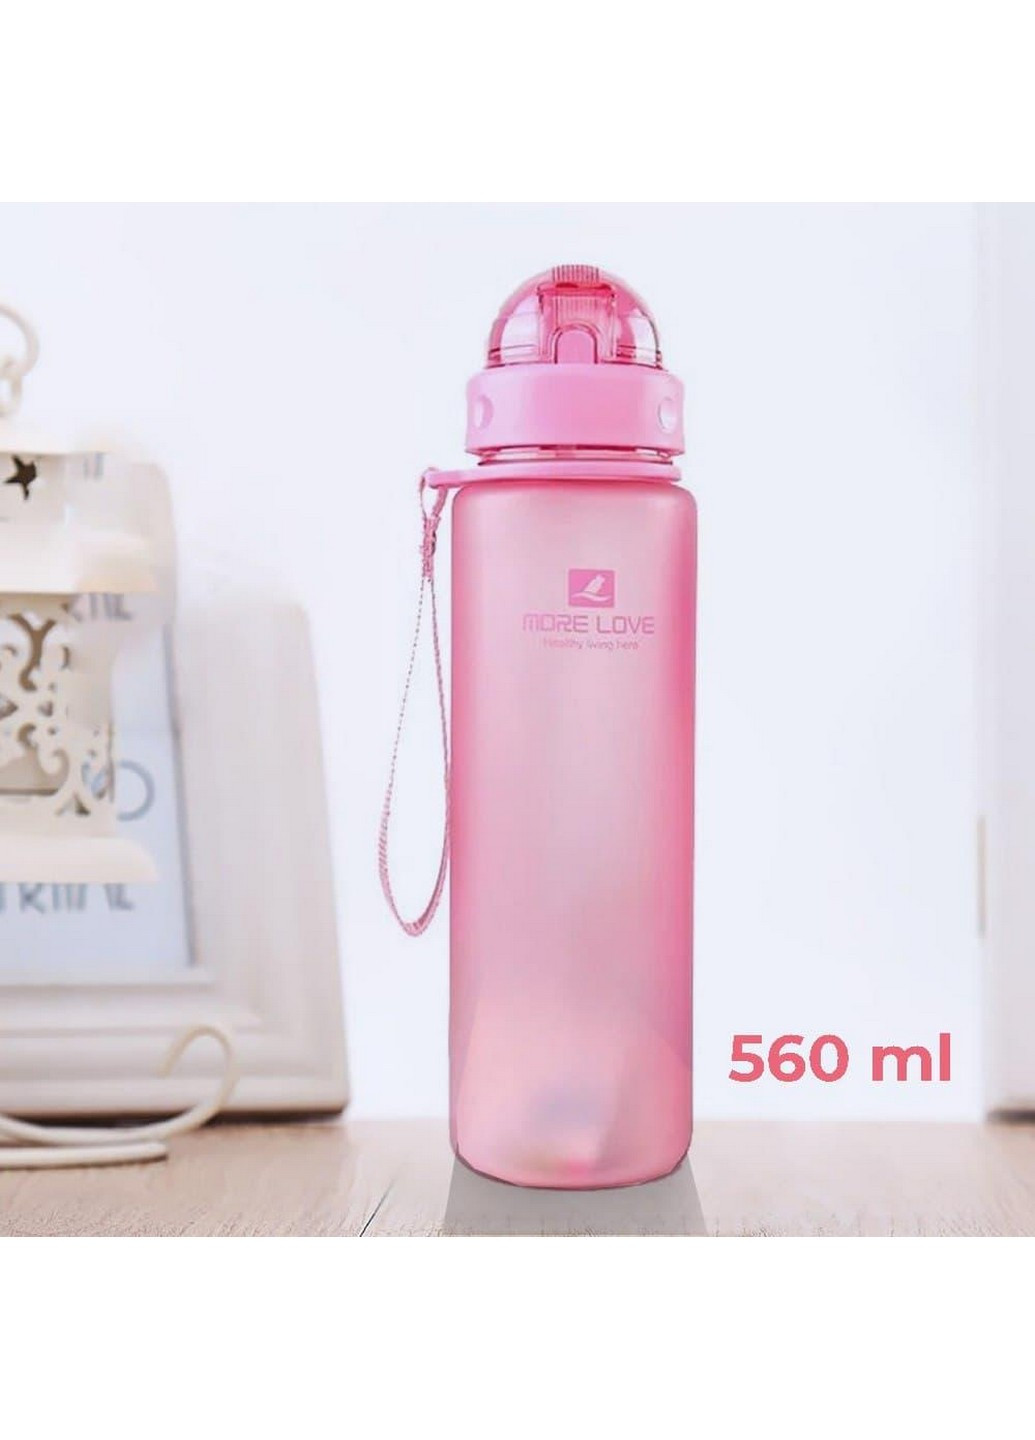 Бутылка для воды спортивная 560 мл Casno (253063405)